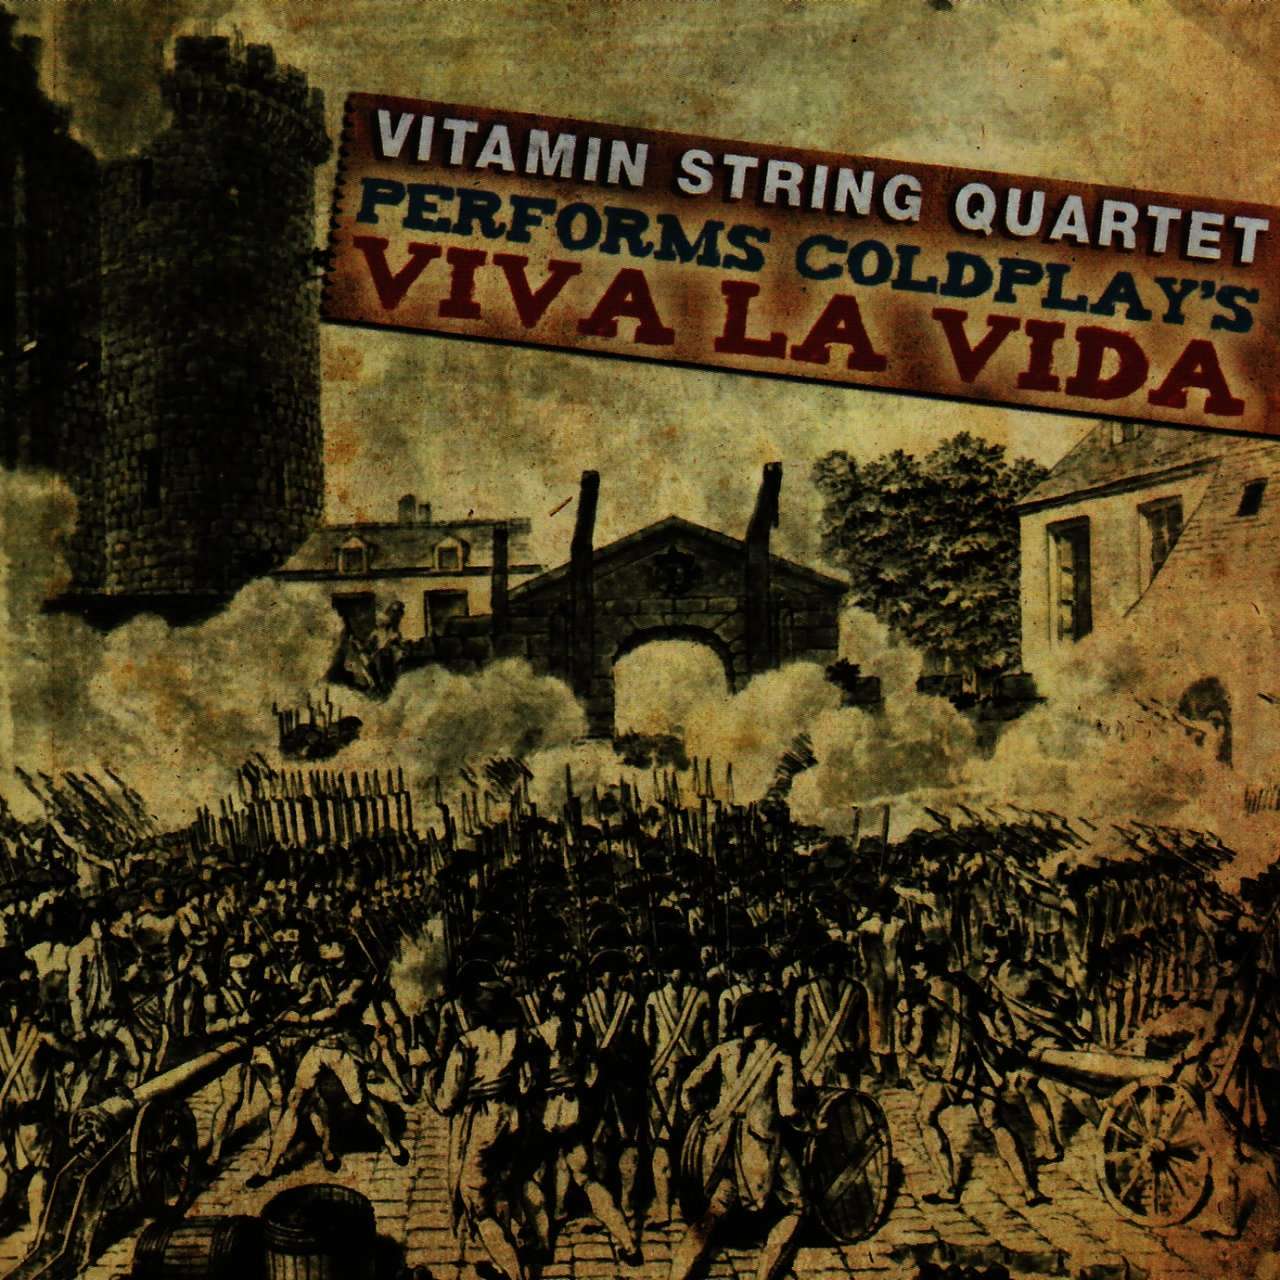 Vitamin String Quartet《Vitamin String Quartet Performs Coldplay’s Viva La Vida》[CD级无损/44.1kHz/16bit]